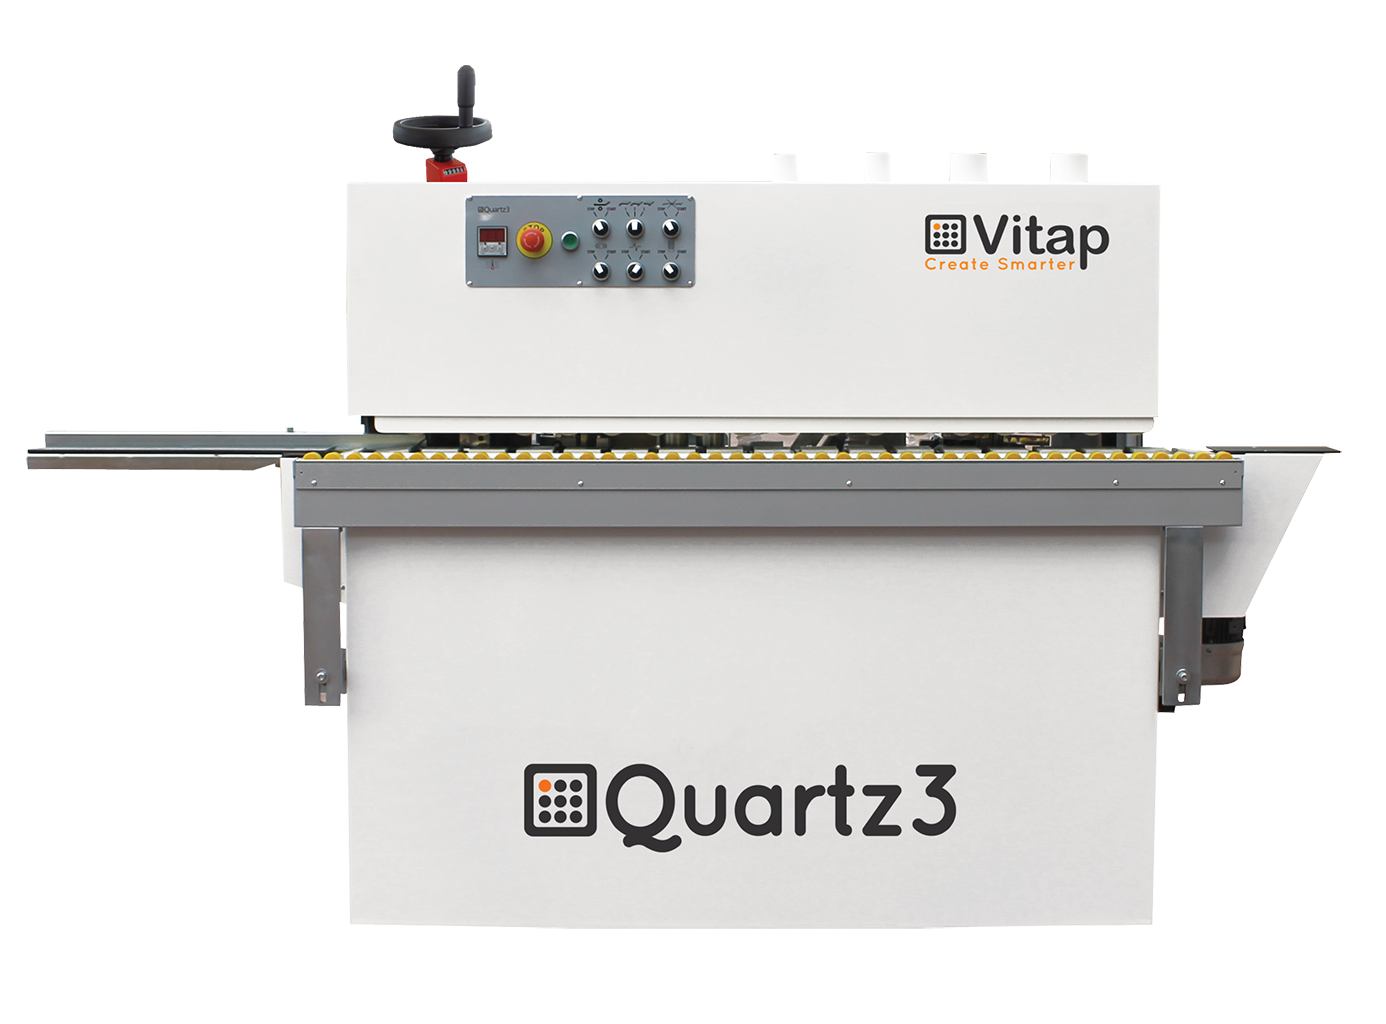 Vitap - Quartz 3